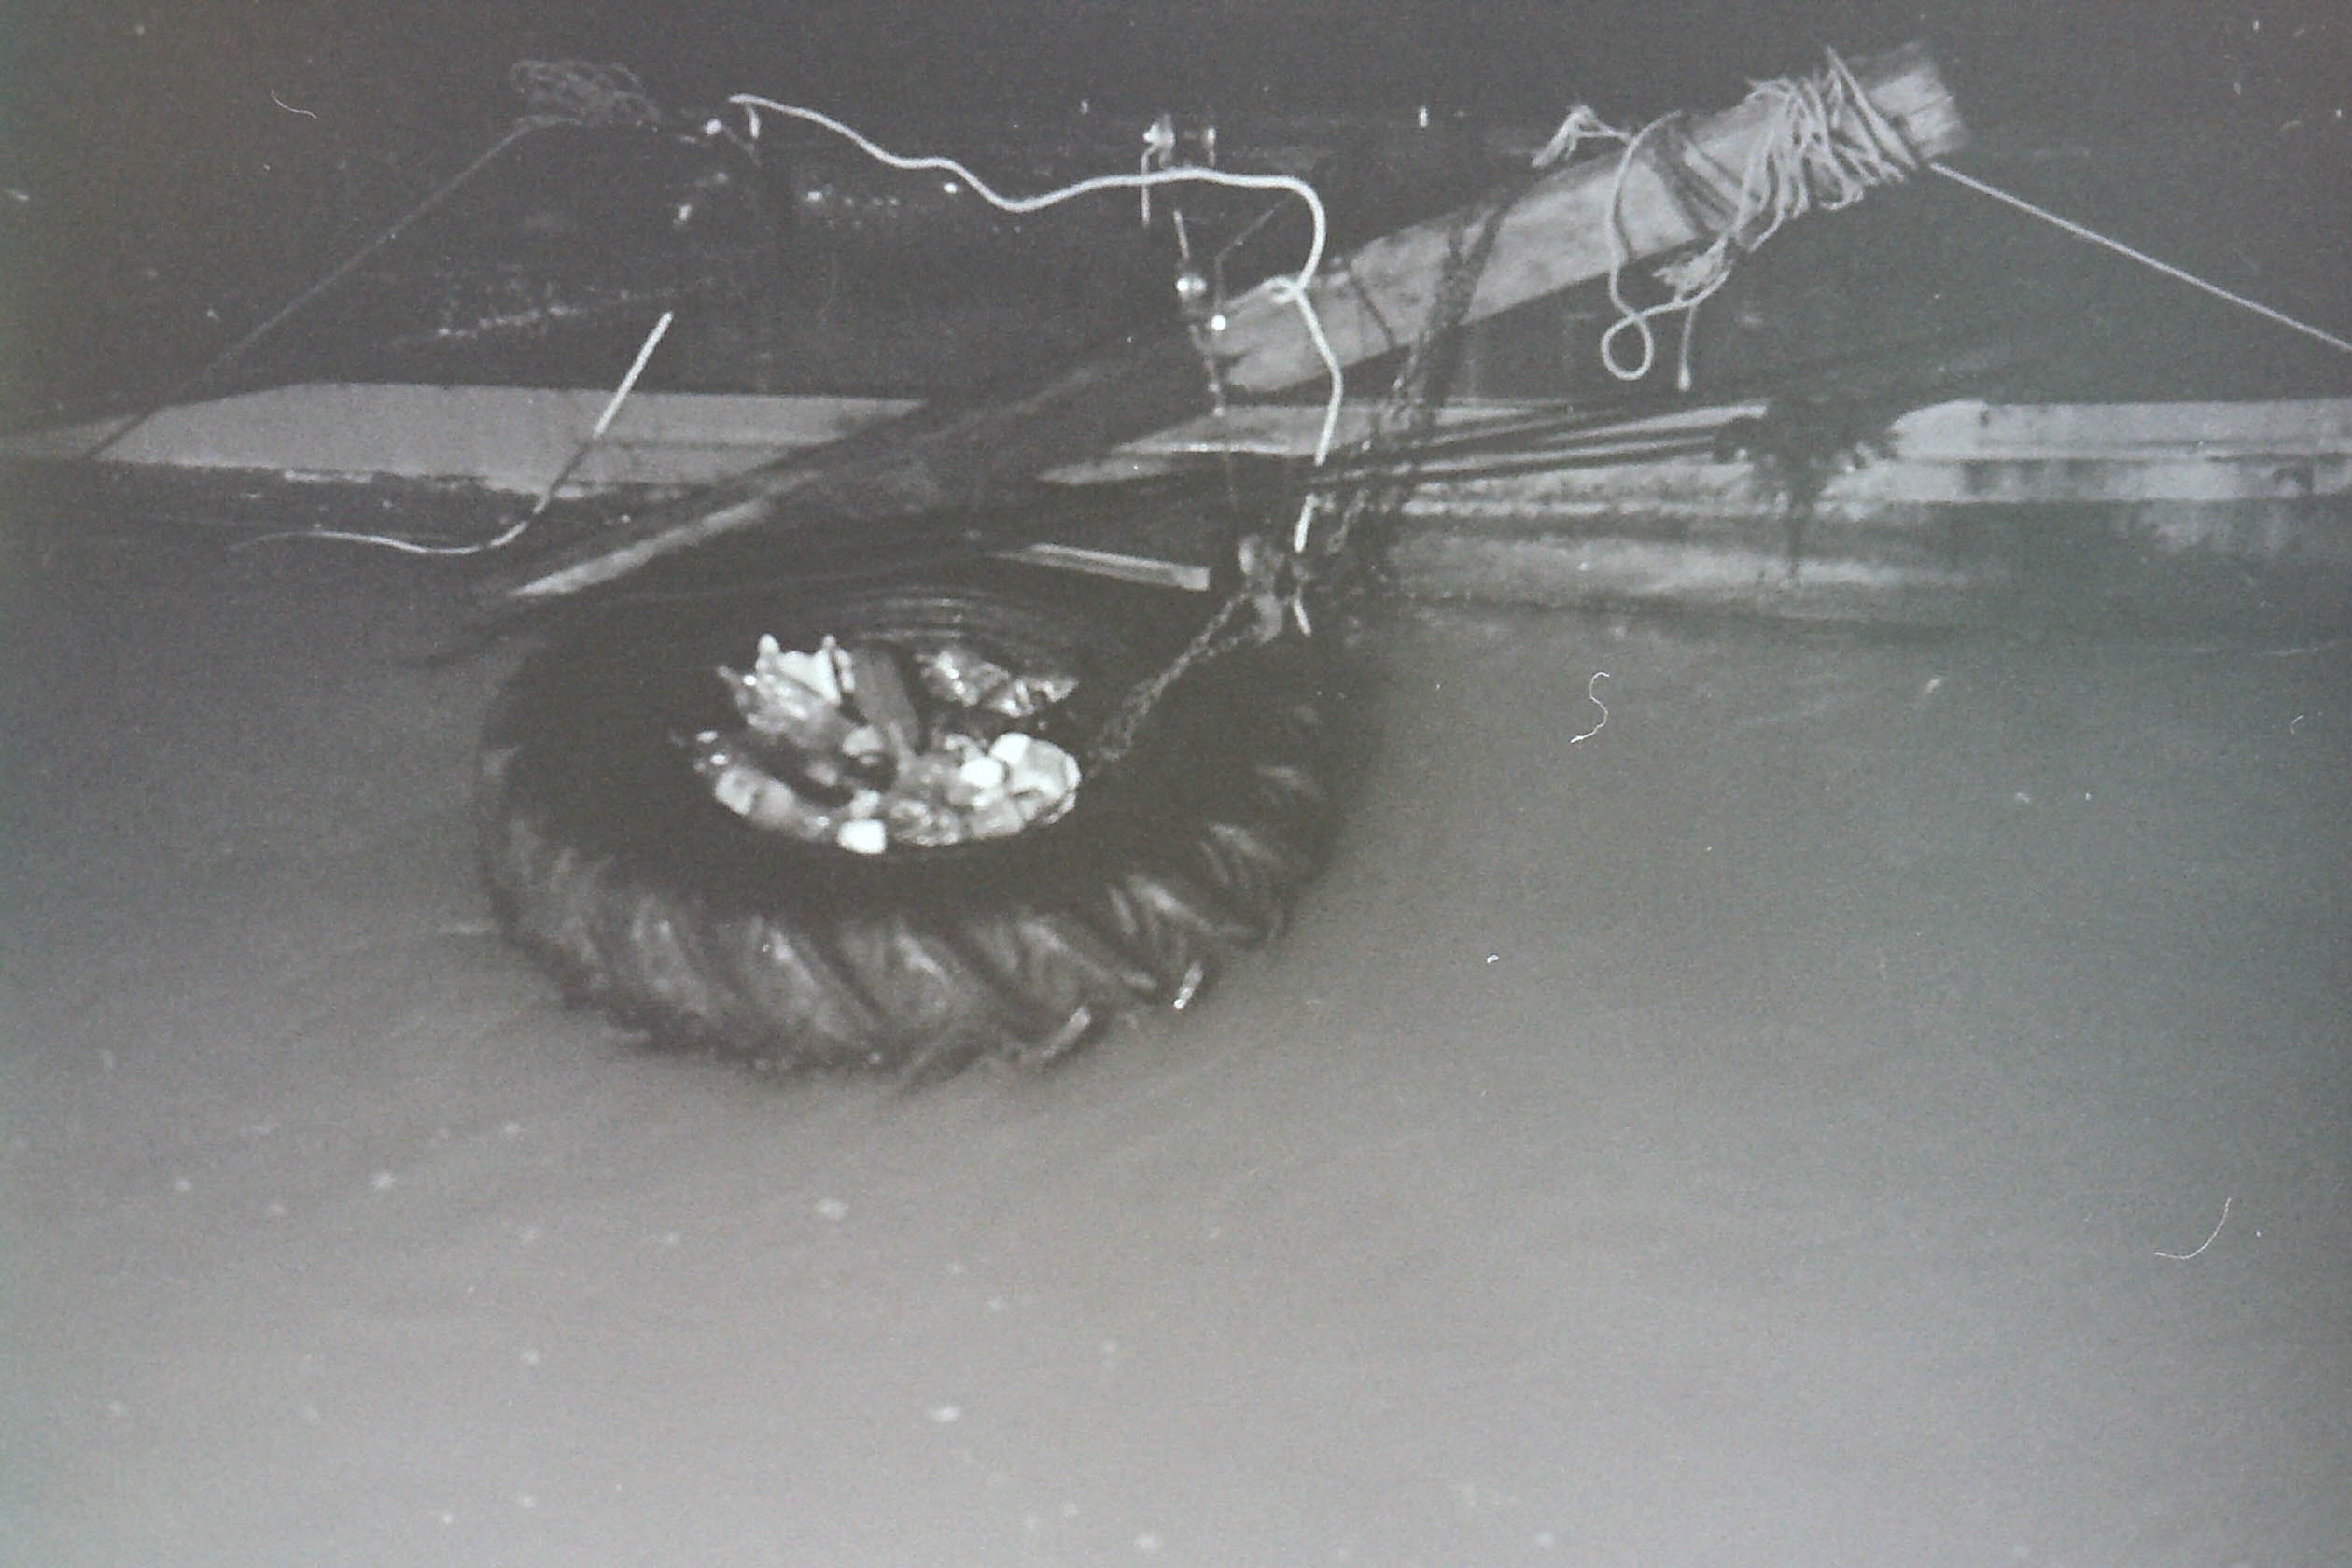 planches de bois, fils de fer et pneu de tracteur flottant dans la crue de la seine à paris dans la nuit en noir et blanc
